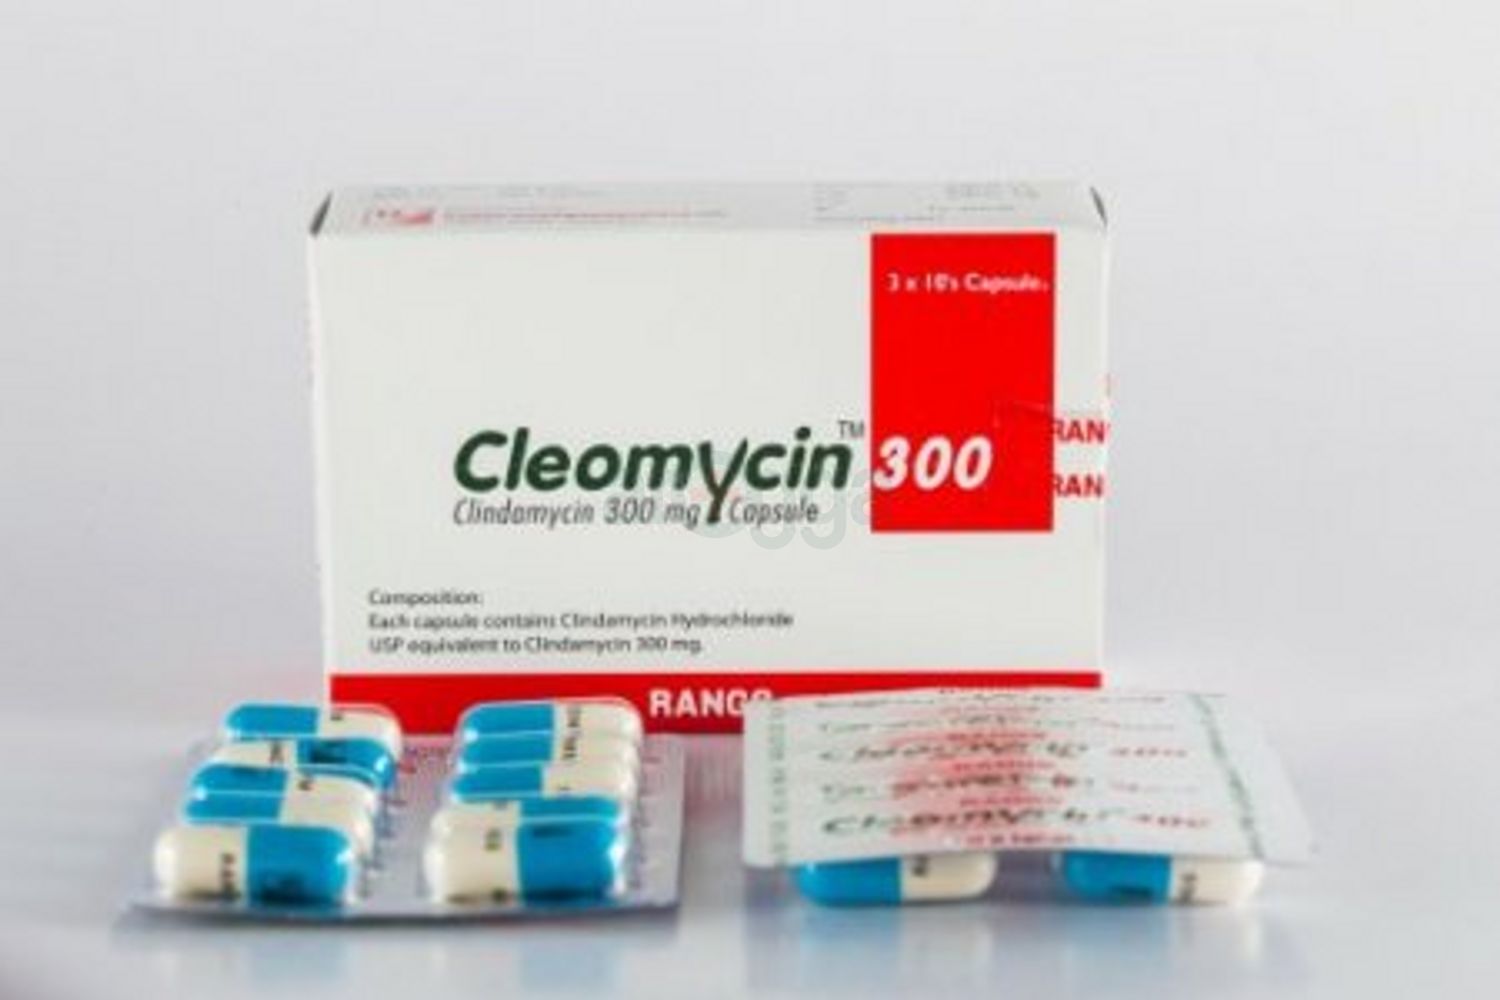 Cleomycin